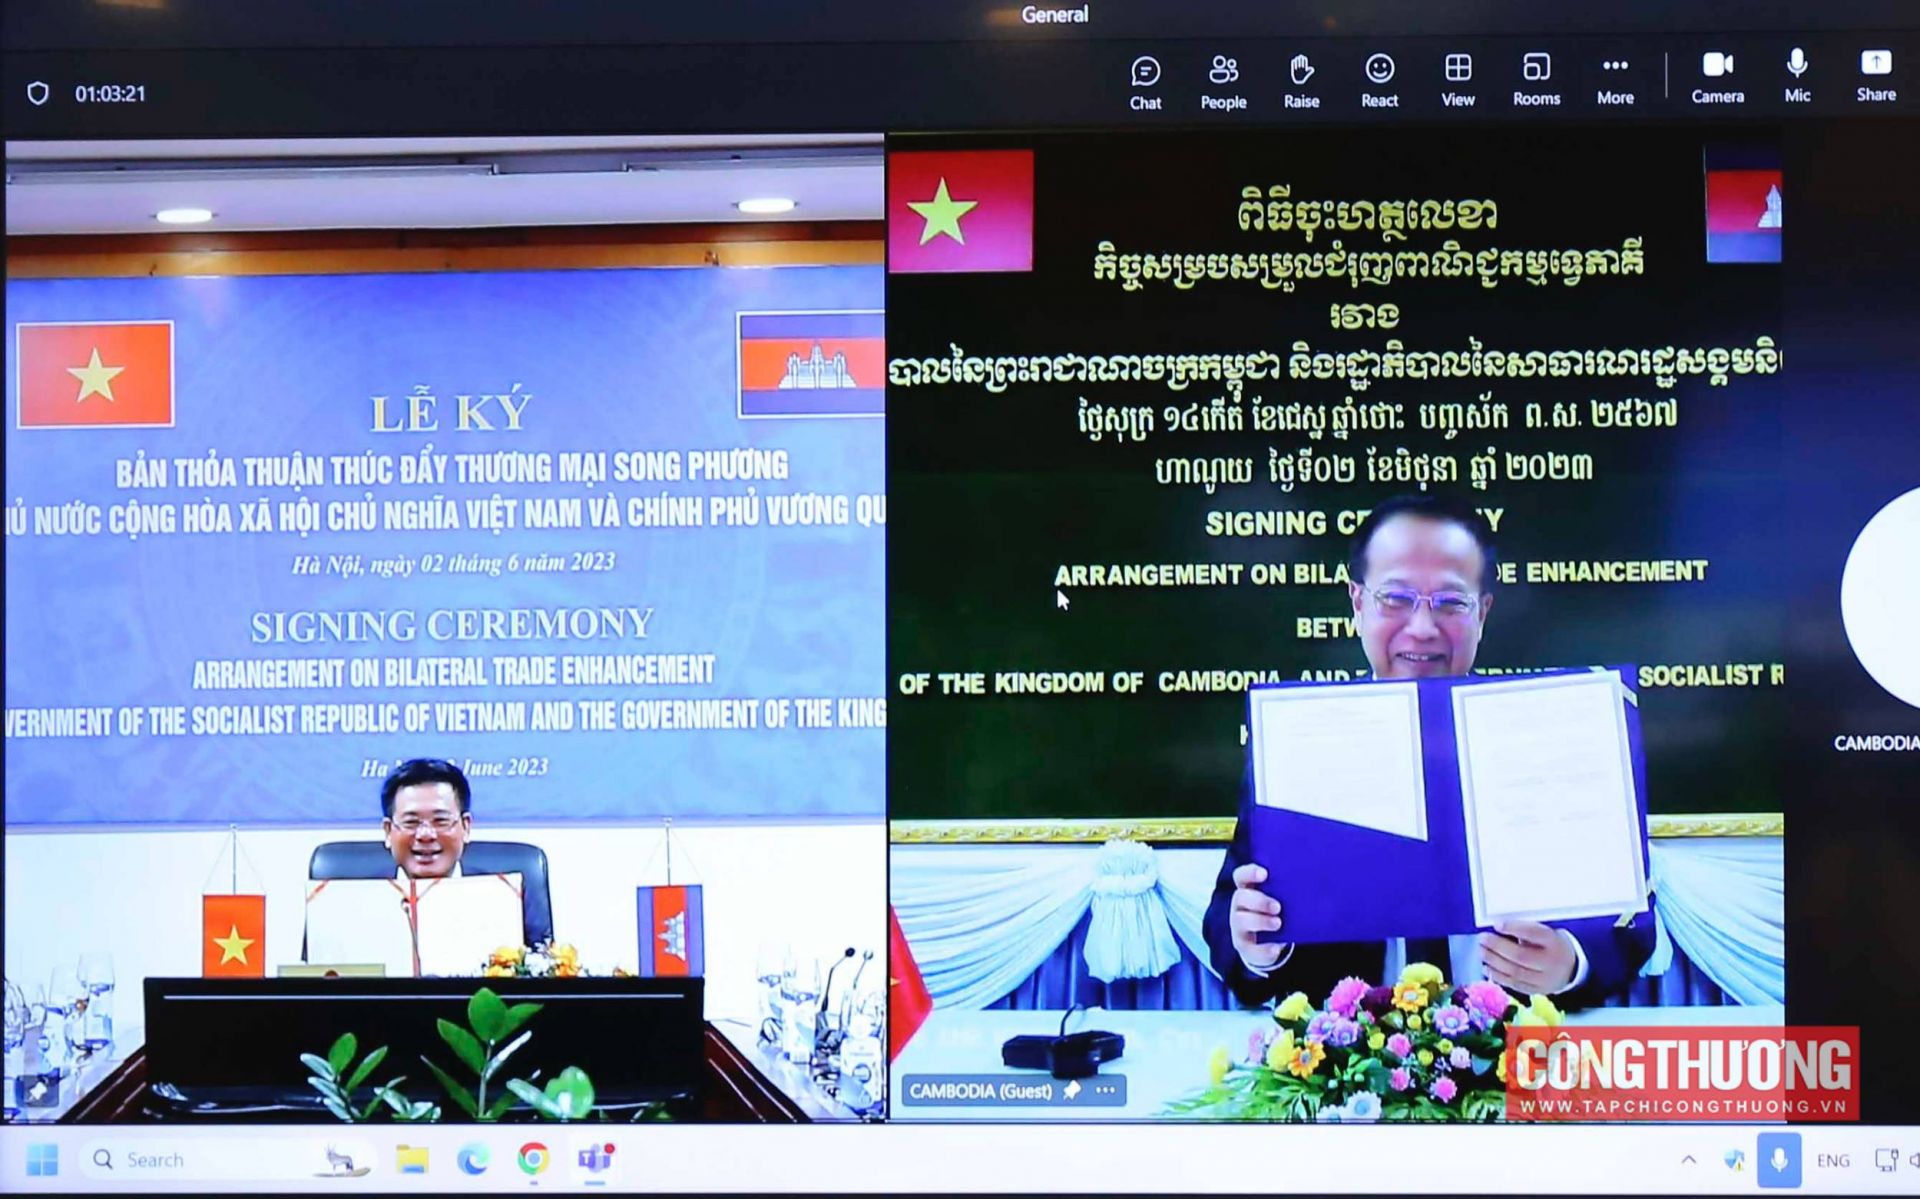 Việt Nam - Campuchia ký Bản Thoả thuận thúc đẩy thương mại song phương